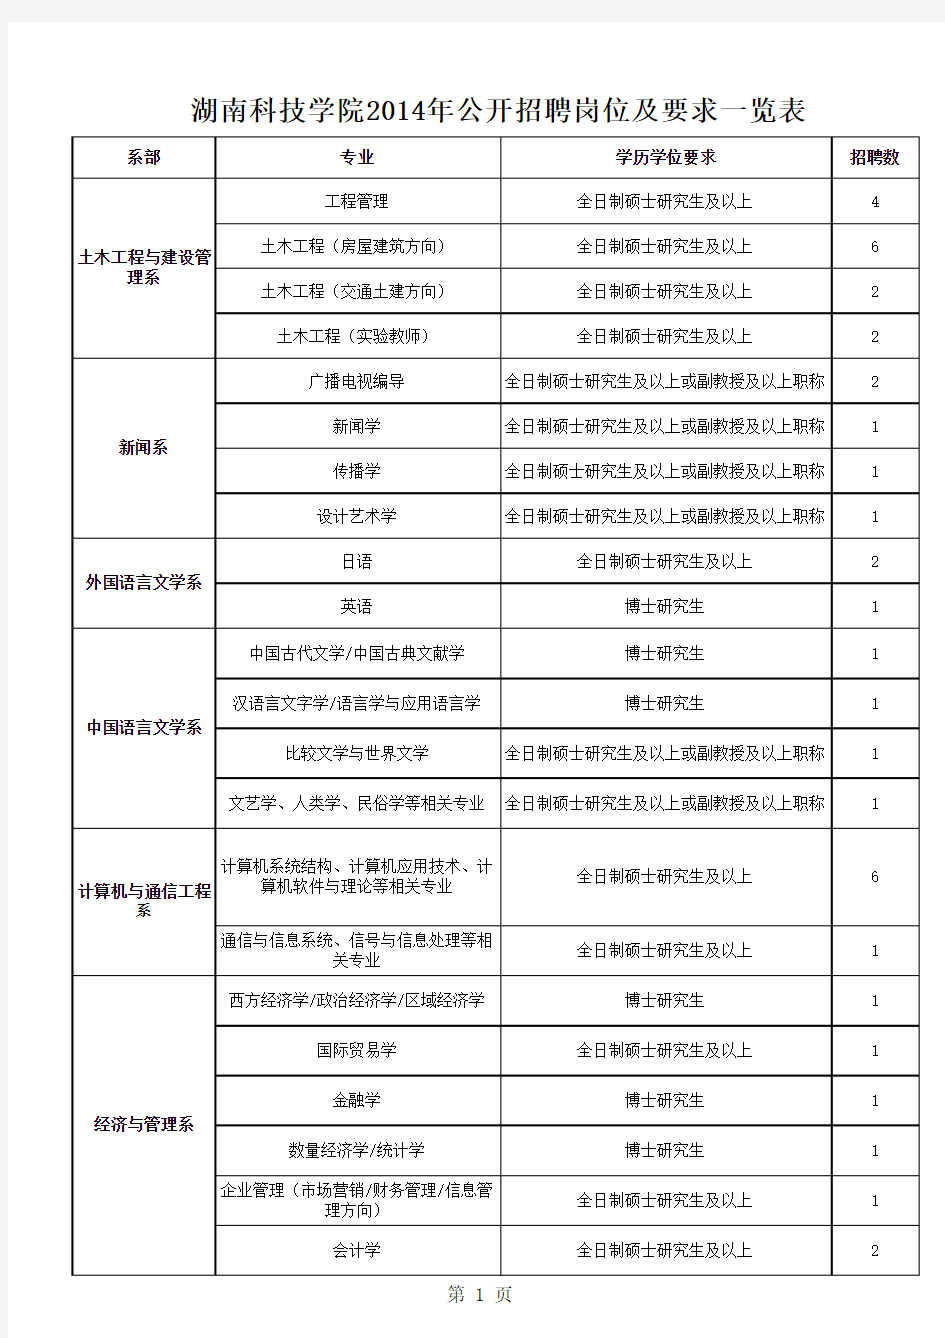 湖南科技学院2014年公开招聘岗位及要求一览表